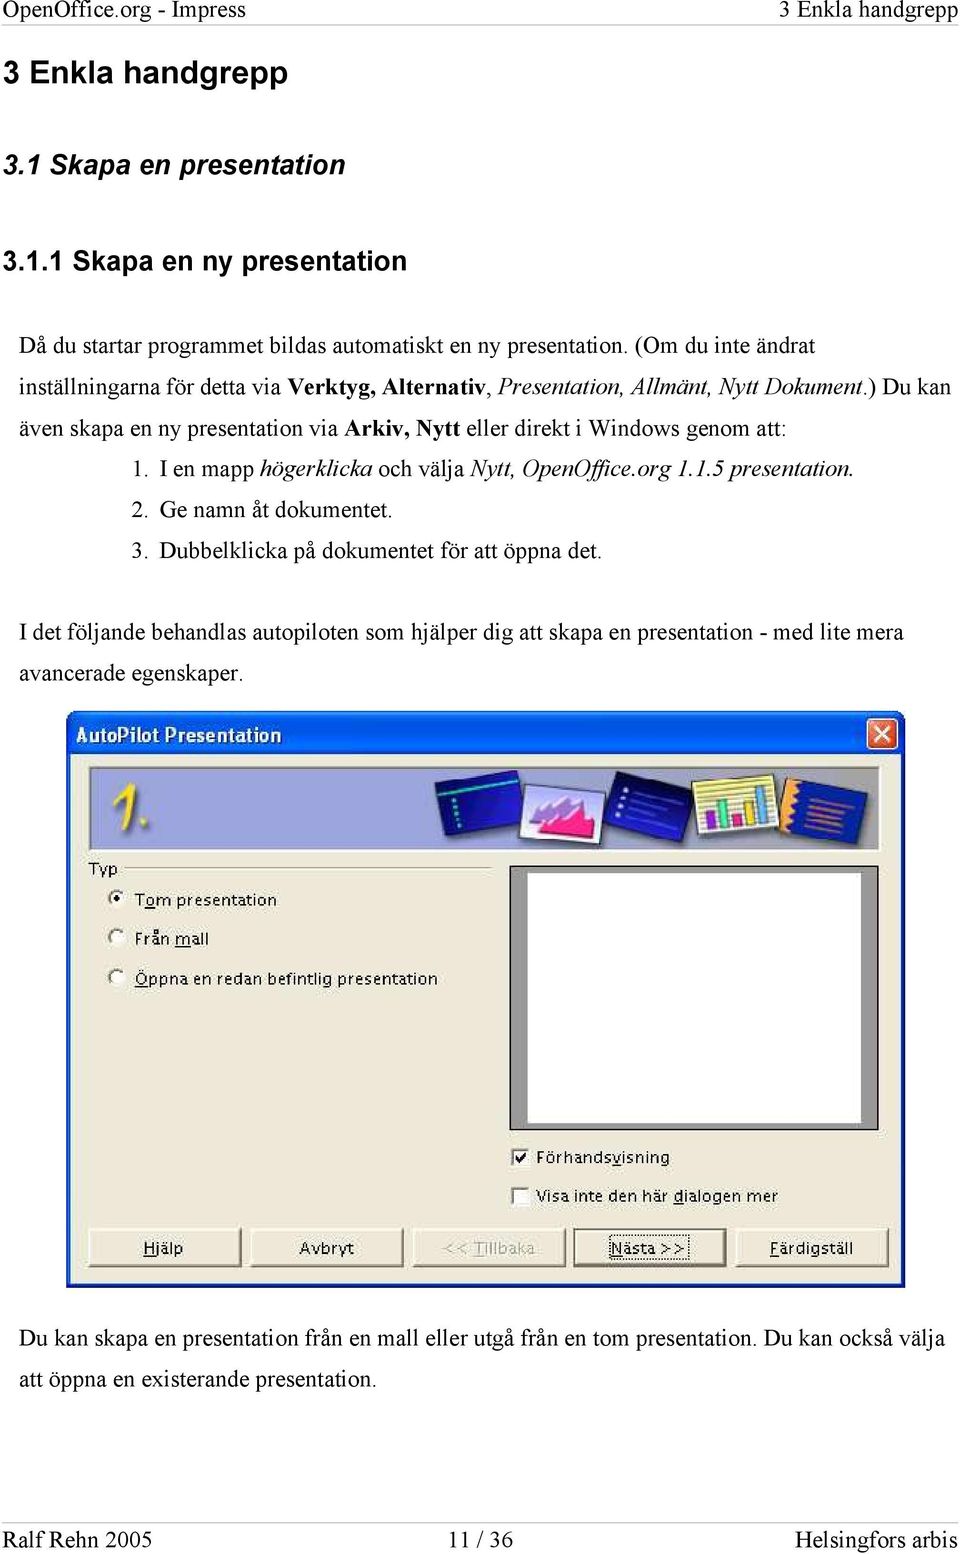 I en mapp högerklicka och välja Nytt, OpenOffice.org 1.1.5 presentation. 2. Ge namn åt dokumentet. 3. Dubbelklicka på dokumentet för att öppna det.